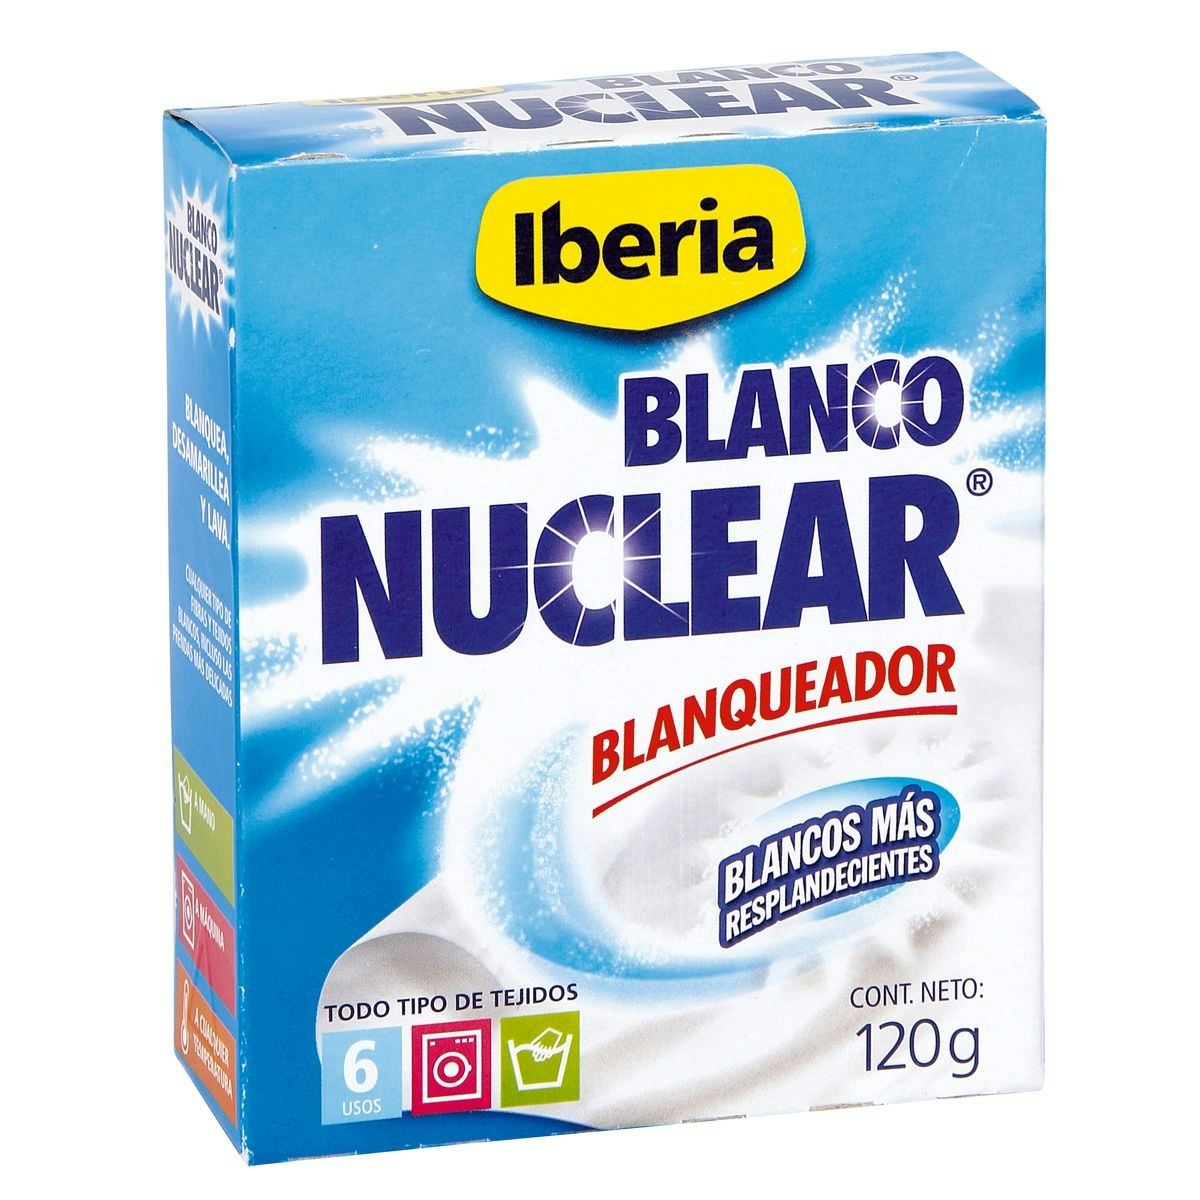 Blanco nuclear IBERIA blanqueador todo tipo de tejidos 120 gr